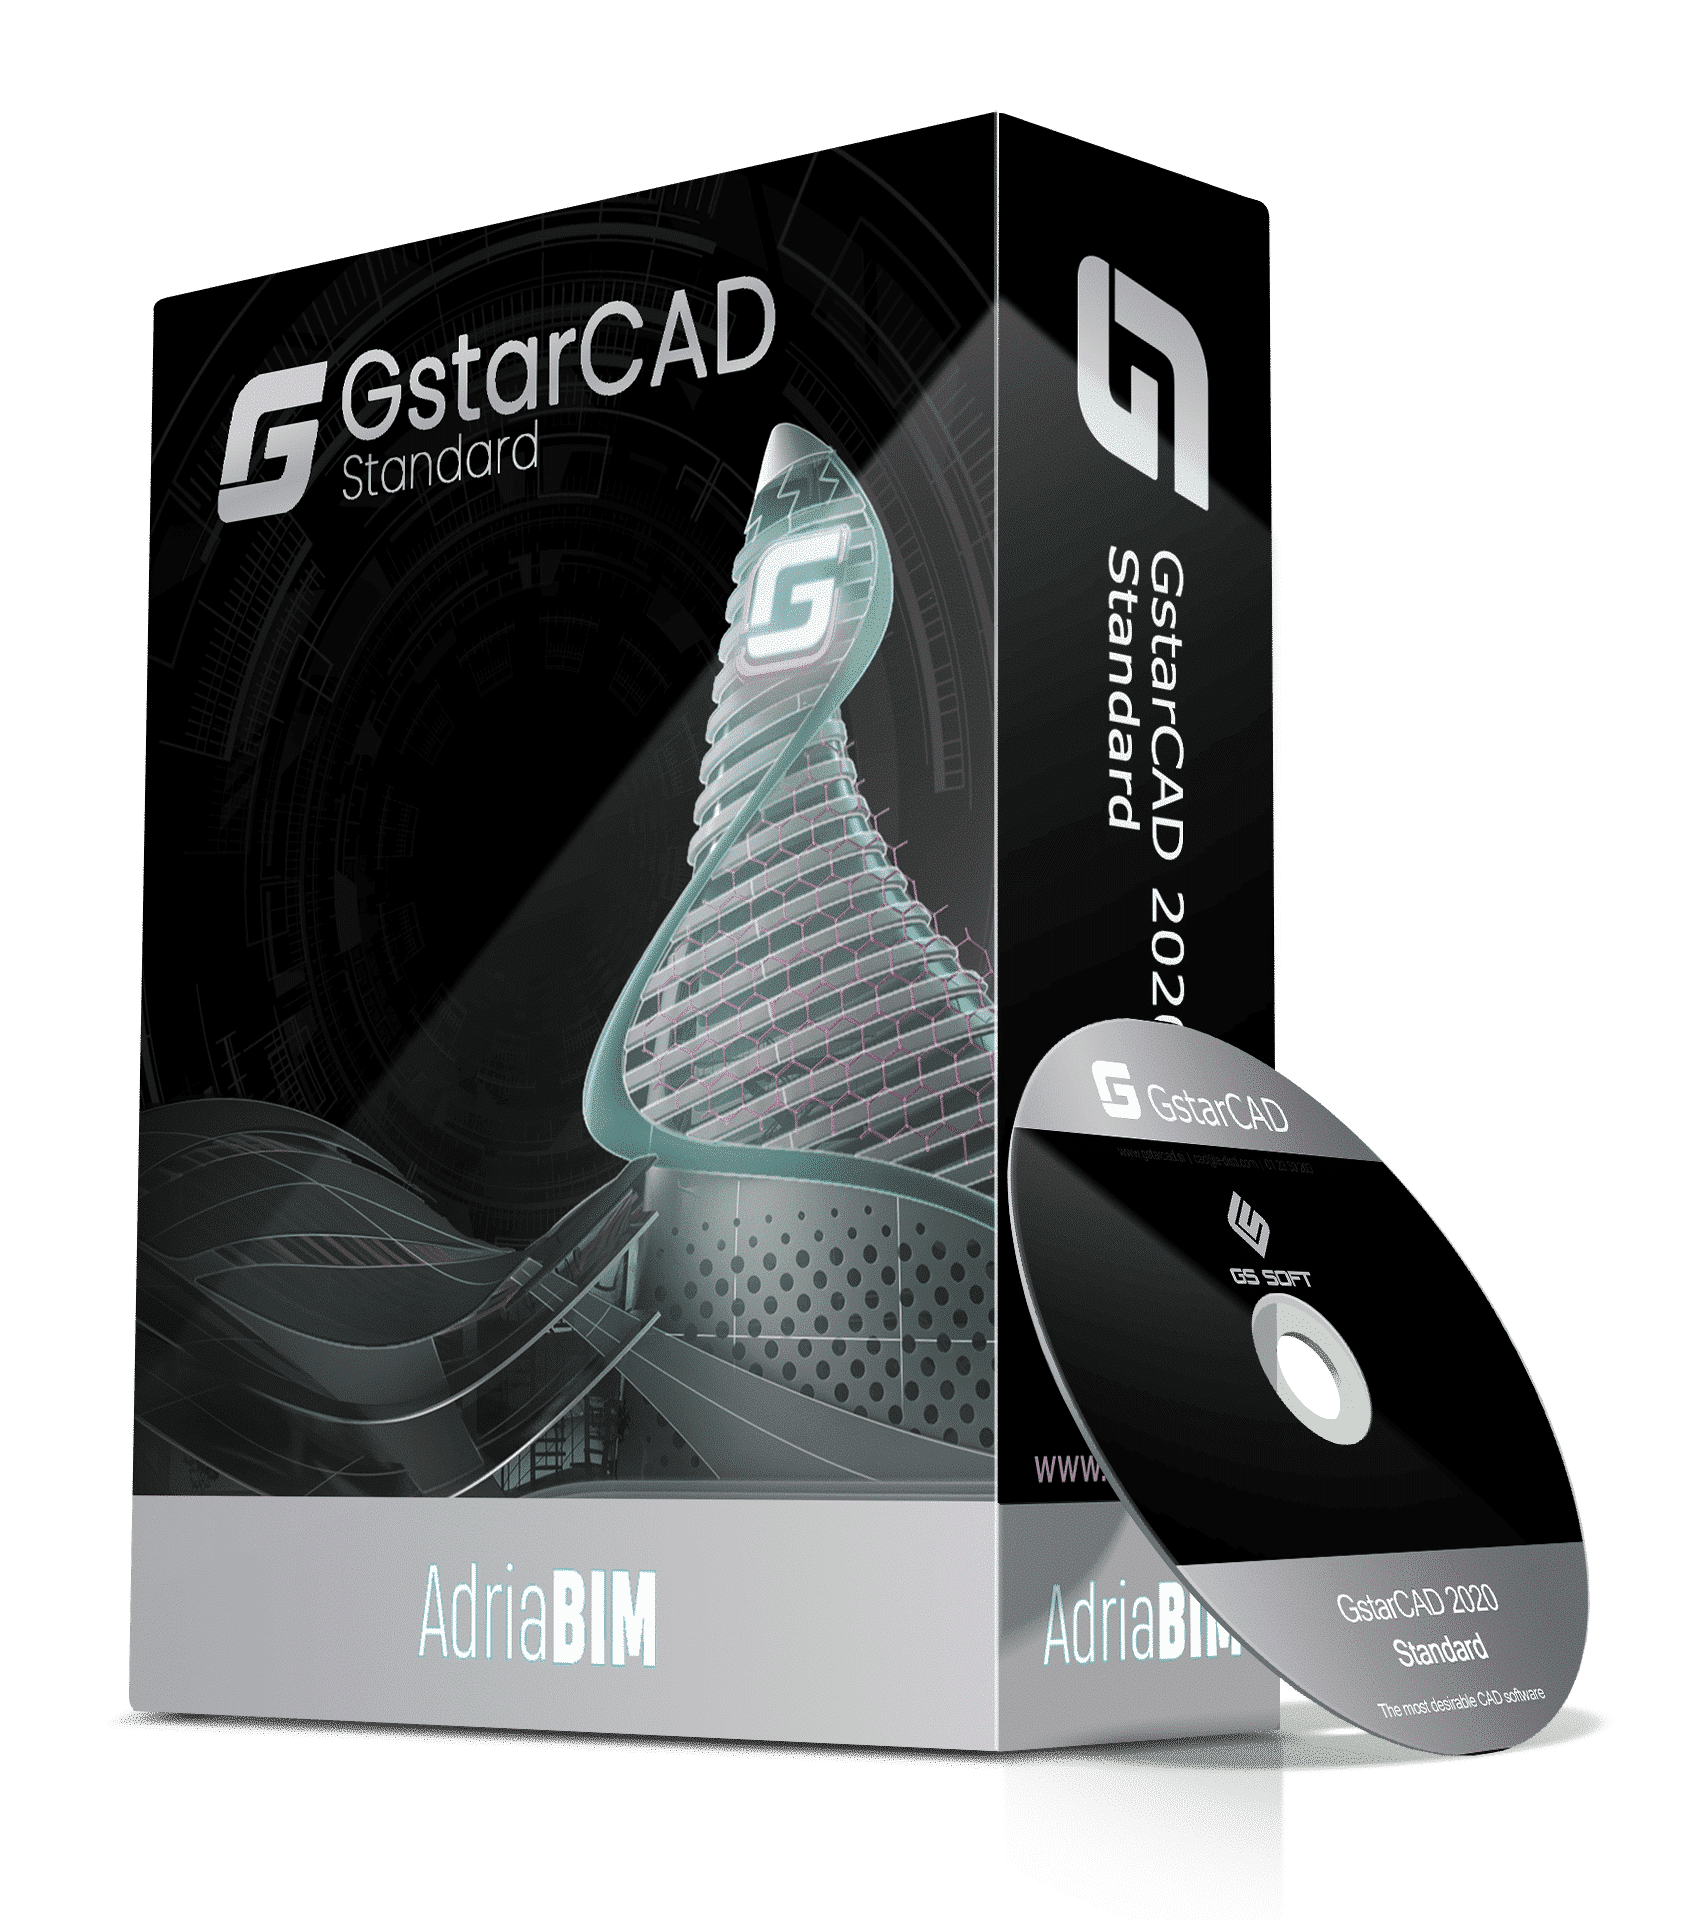 gstarcad updates